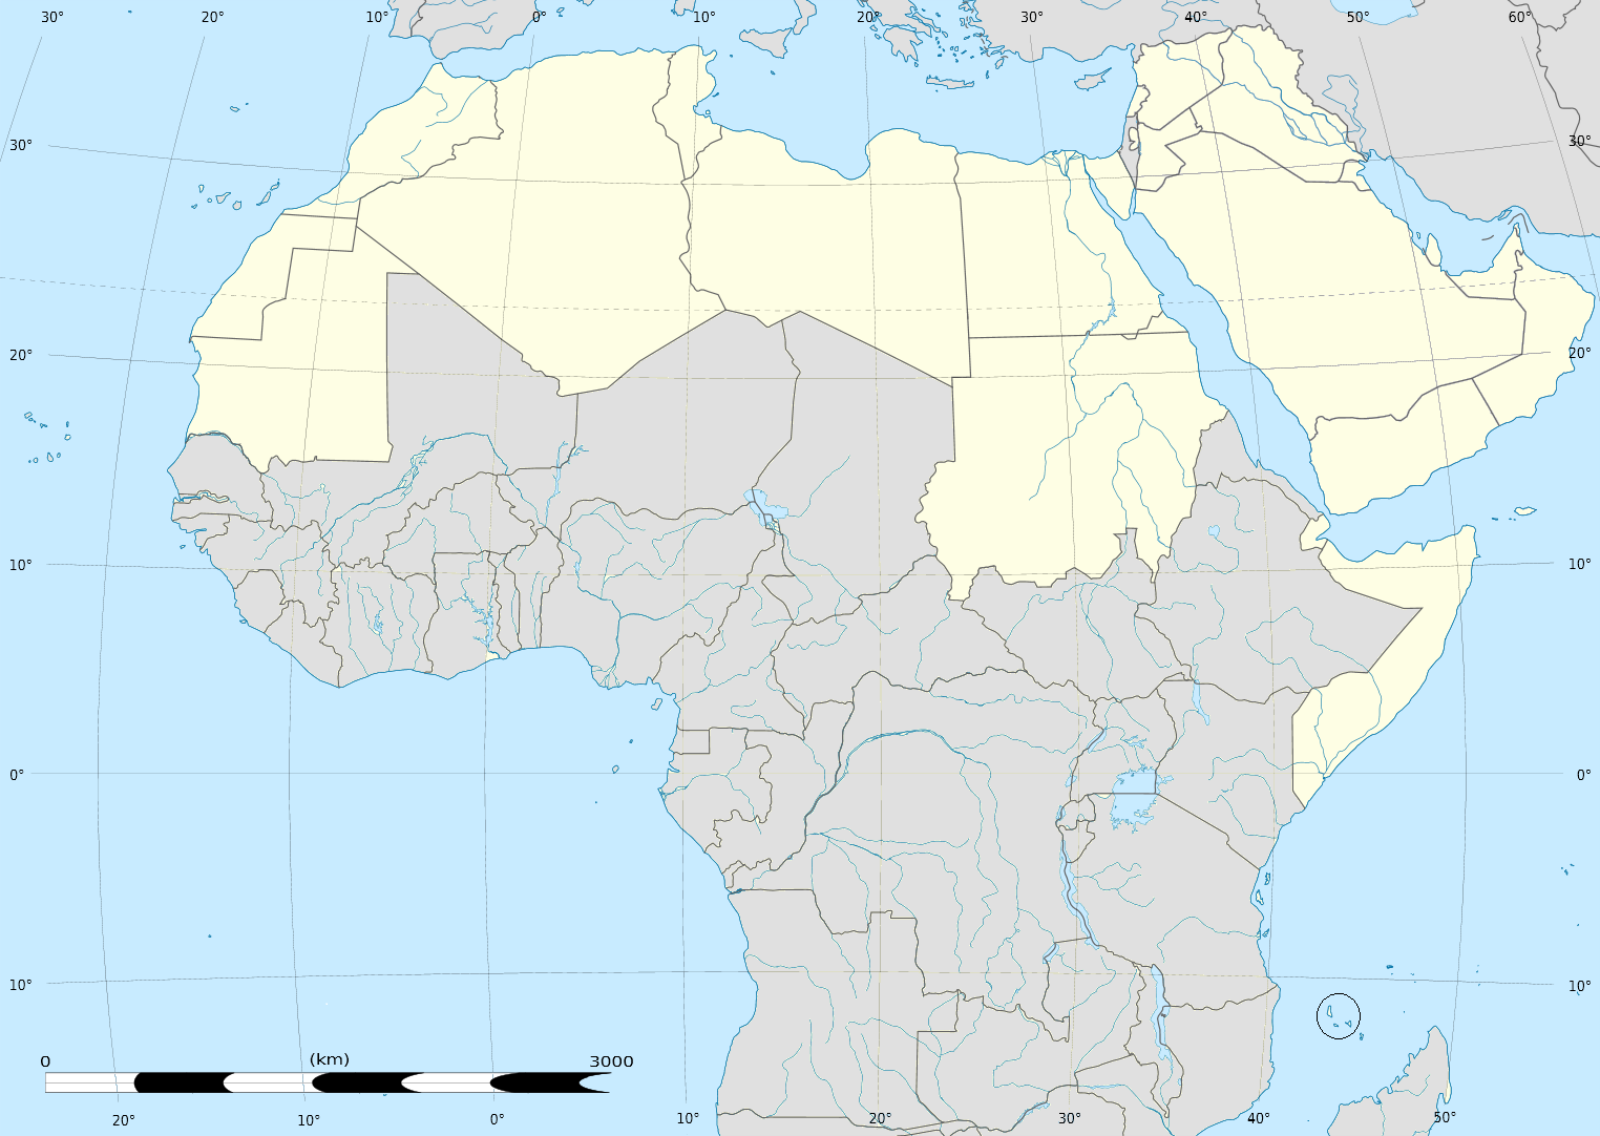 arab világ is located in Arab world